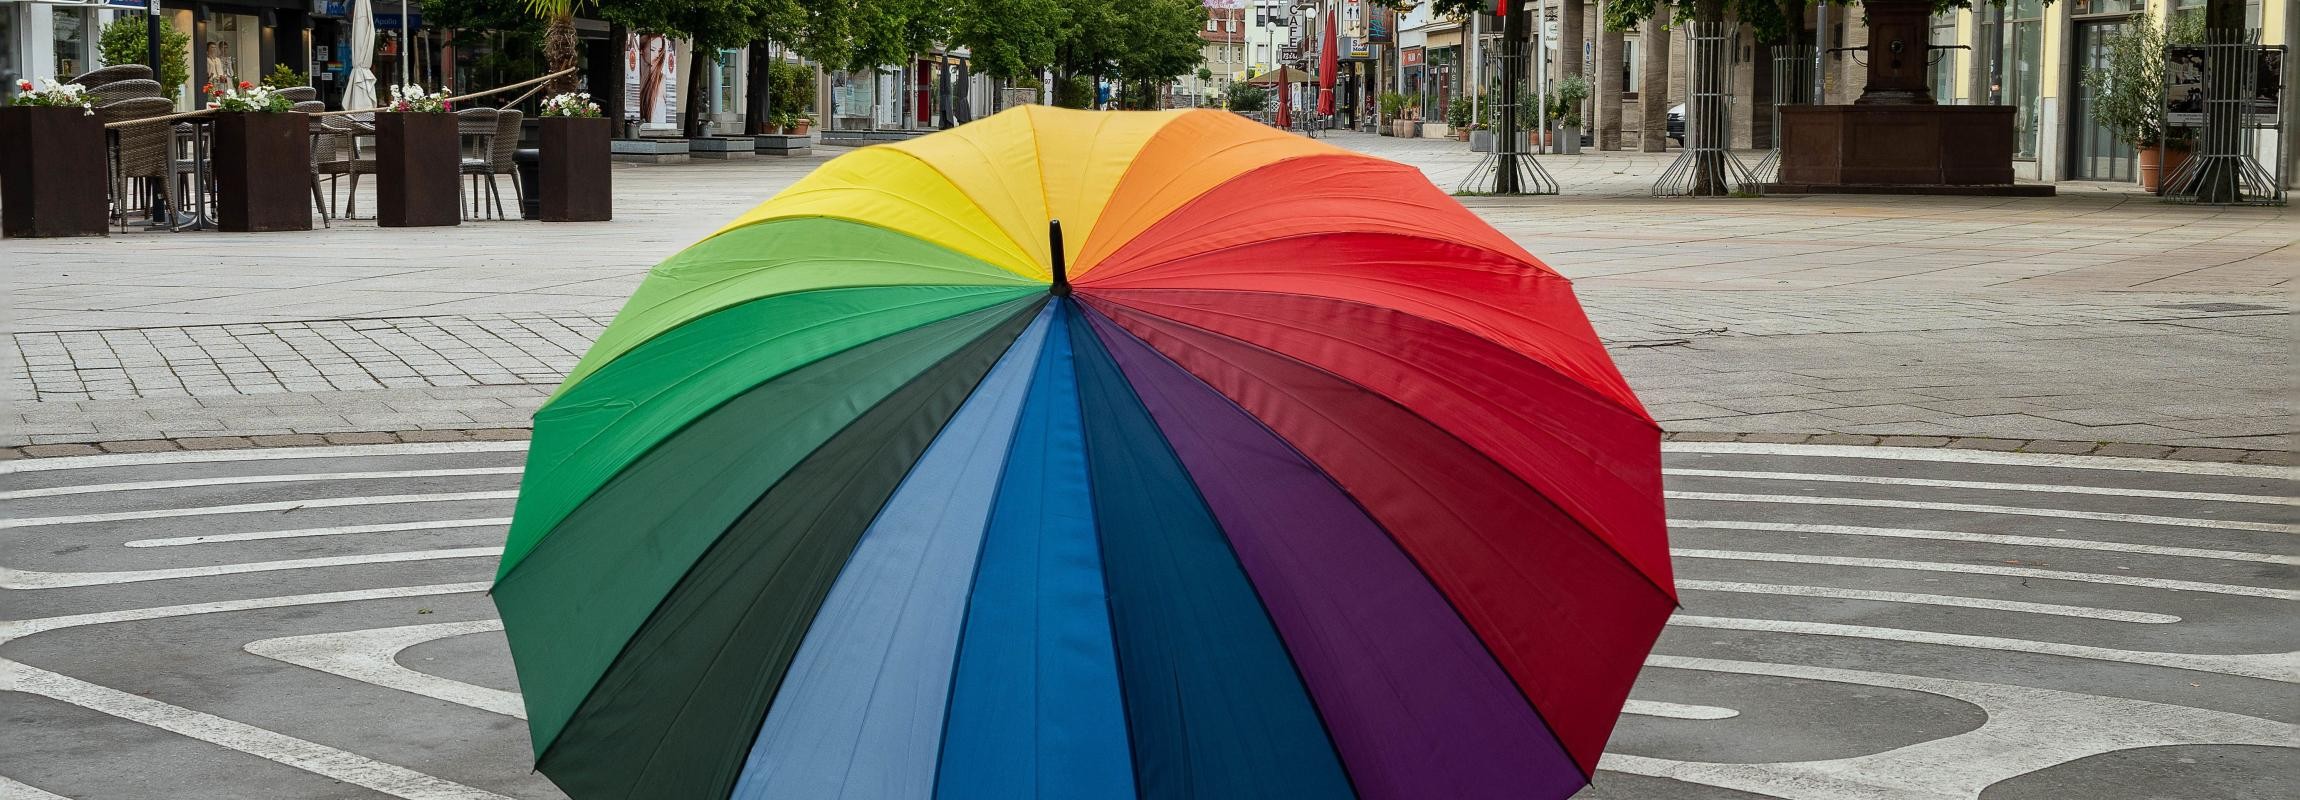 Bunter Regenschirm steht aufgespannt auf dem Marktplatz